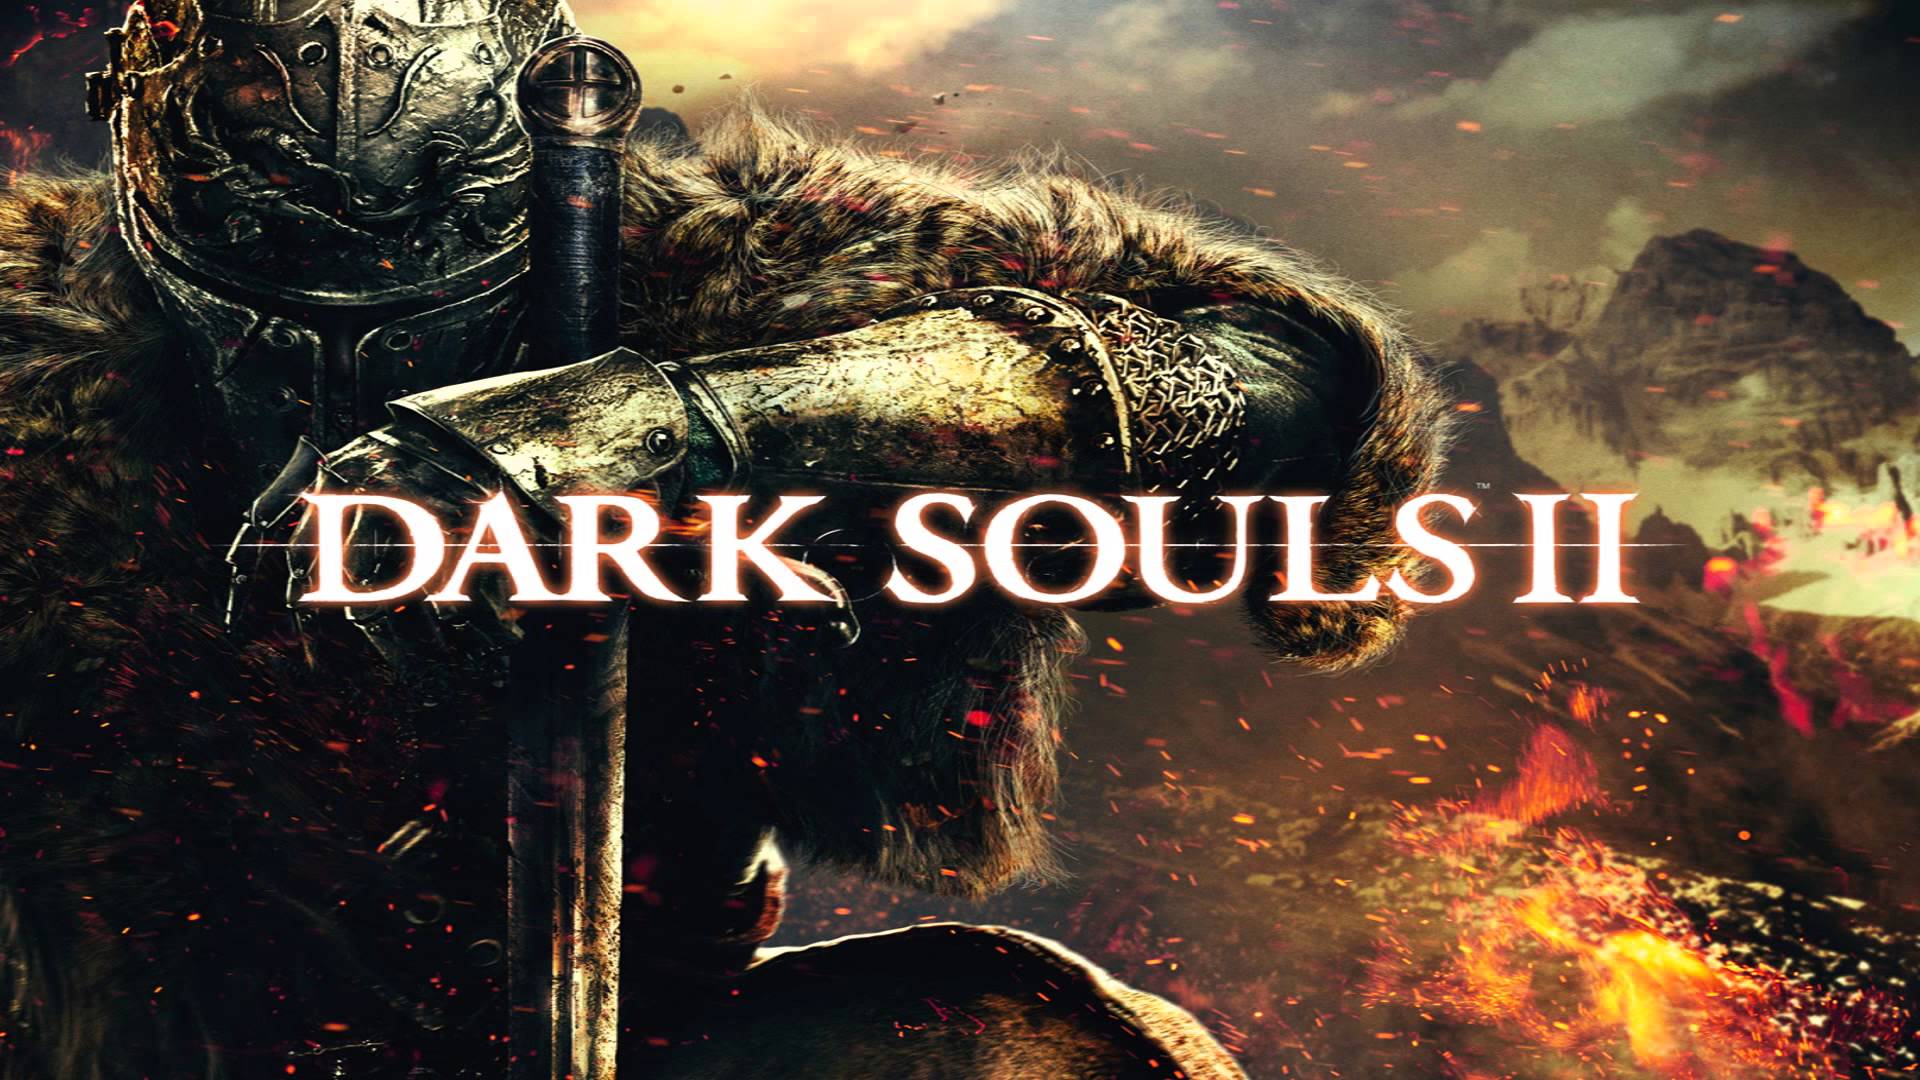 Dark Souls II Backgrounds on Wallpapers Vista